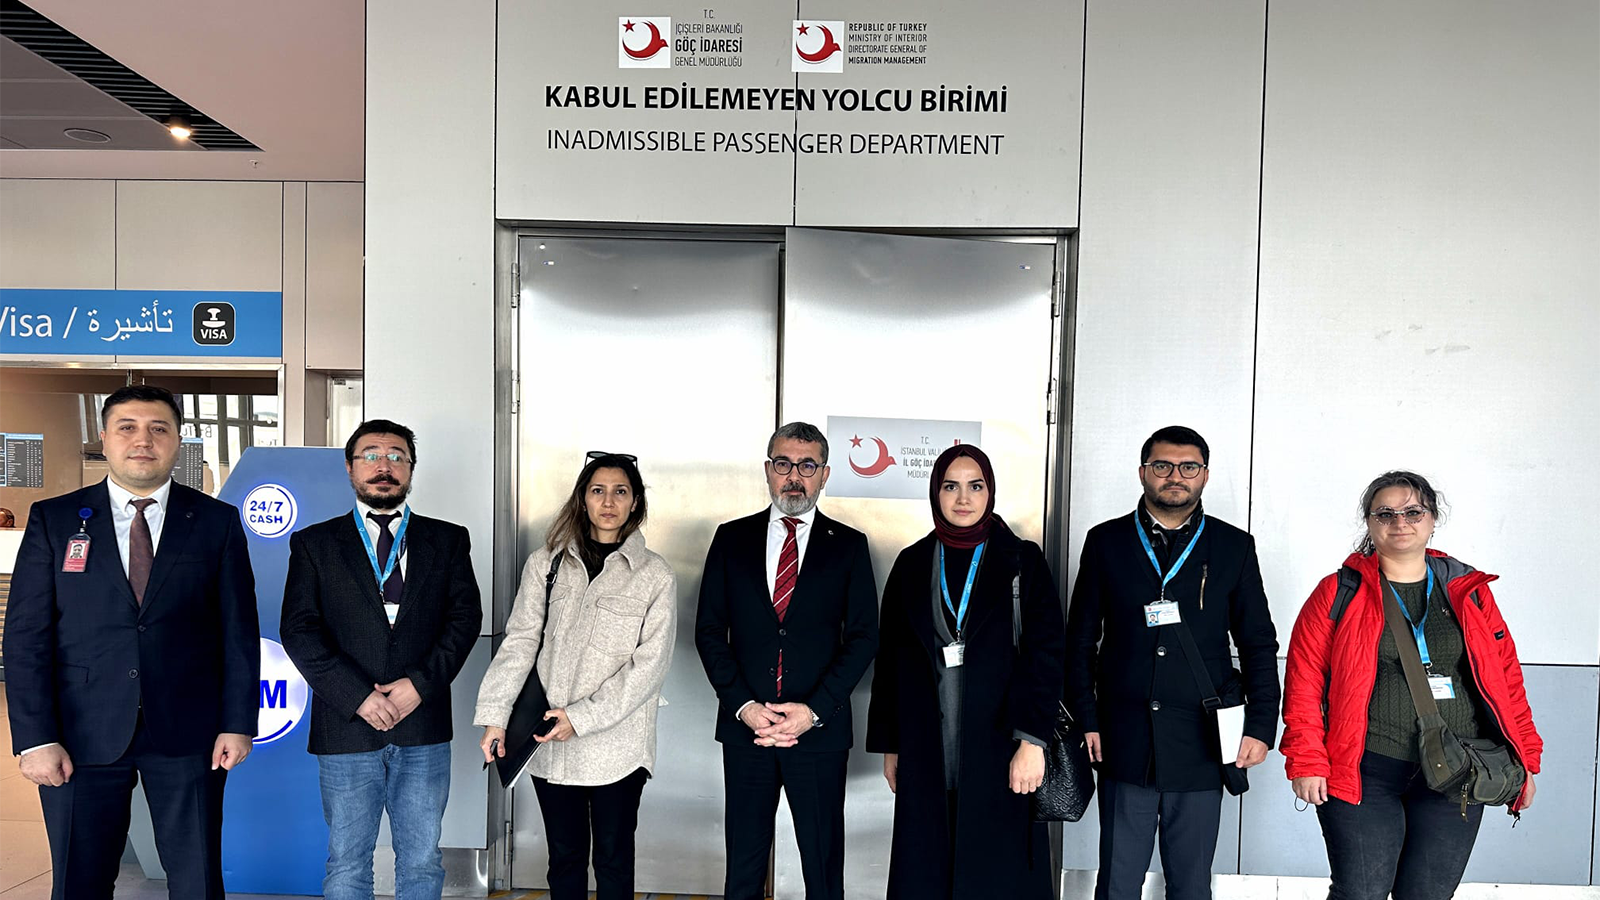 İstanbul Havalimanı Kabul Edilemeyen Yolcu Birimine Ziyaret